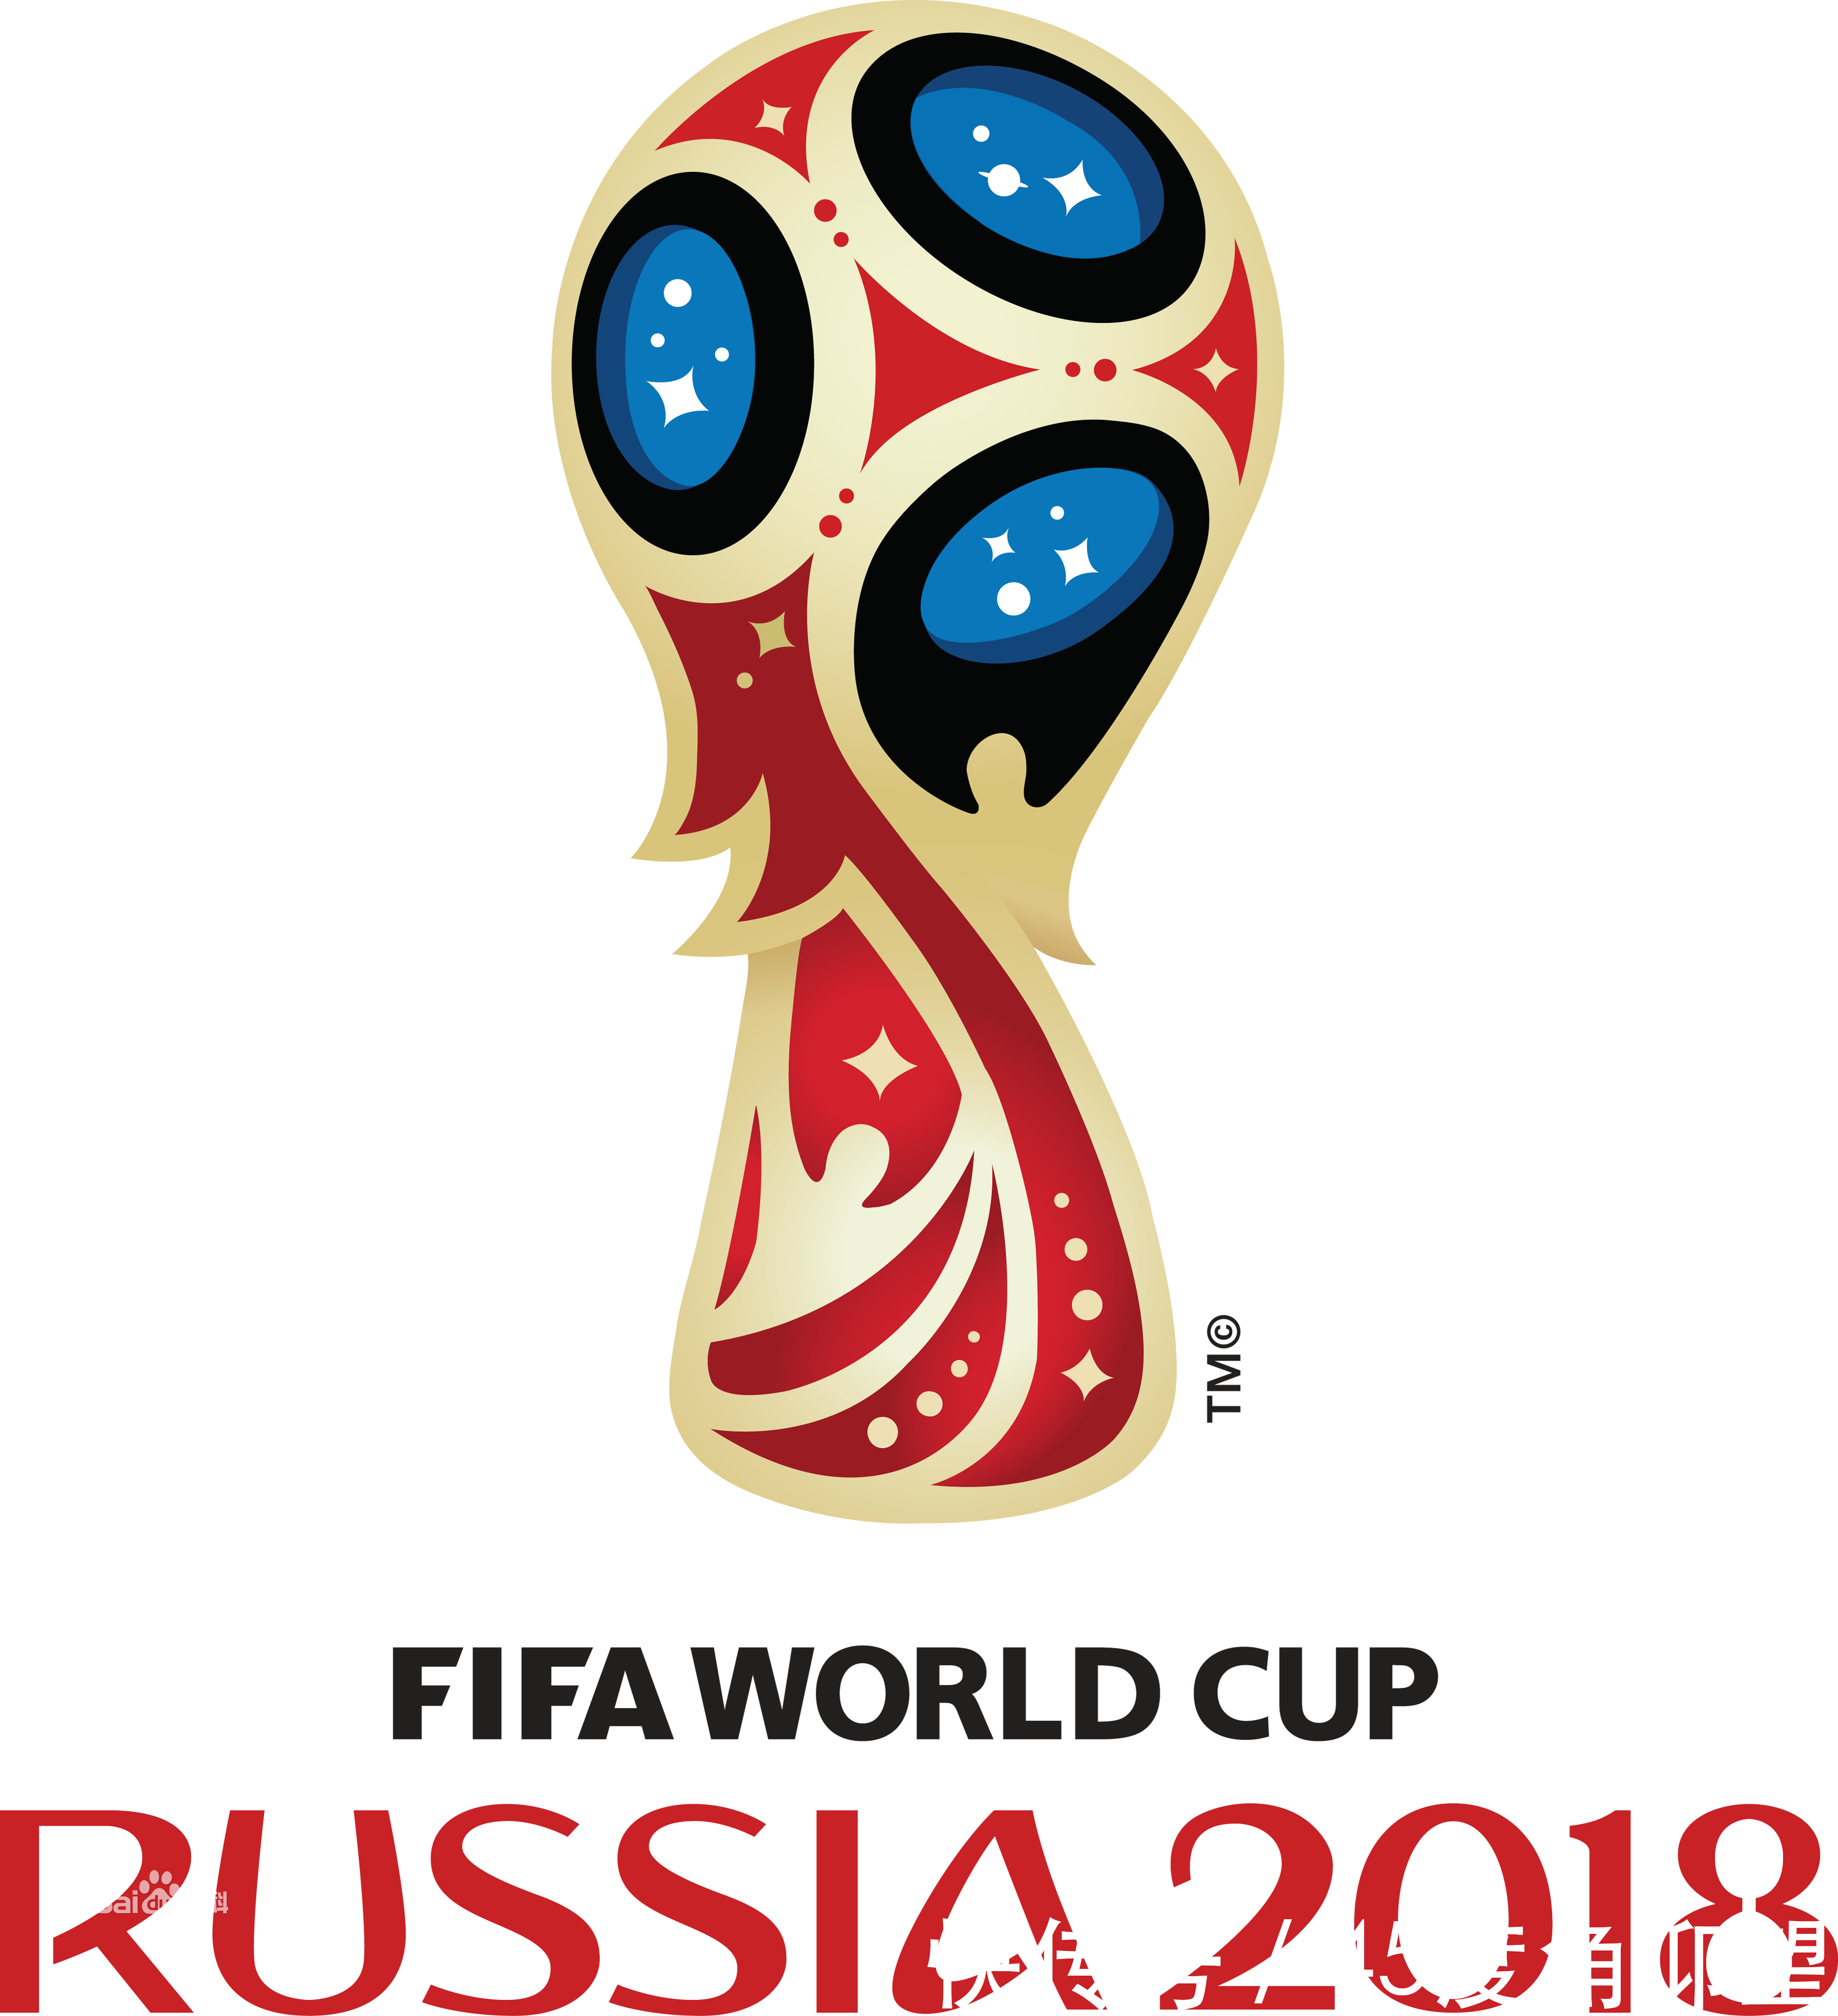 2018年俄罗斯世界杯我们不会耽误第二天上班